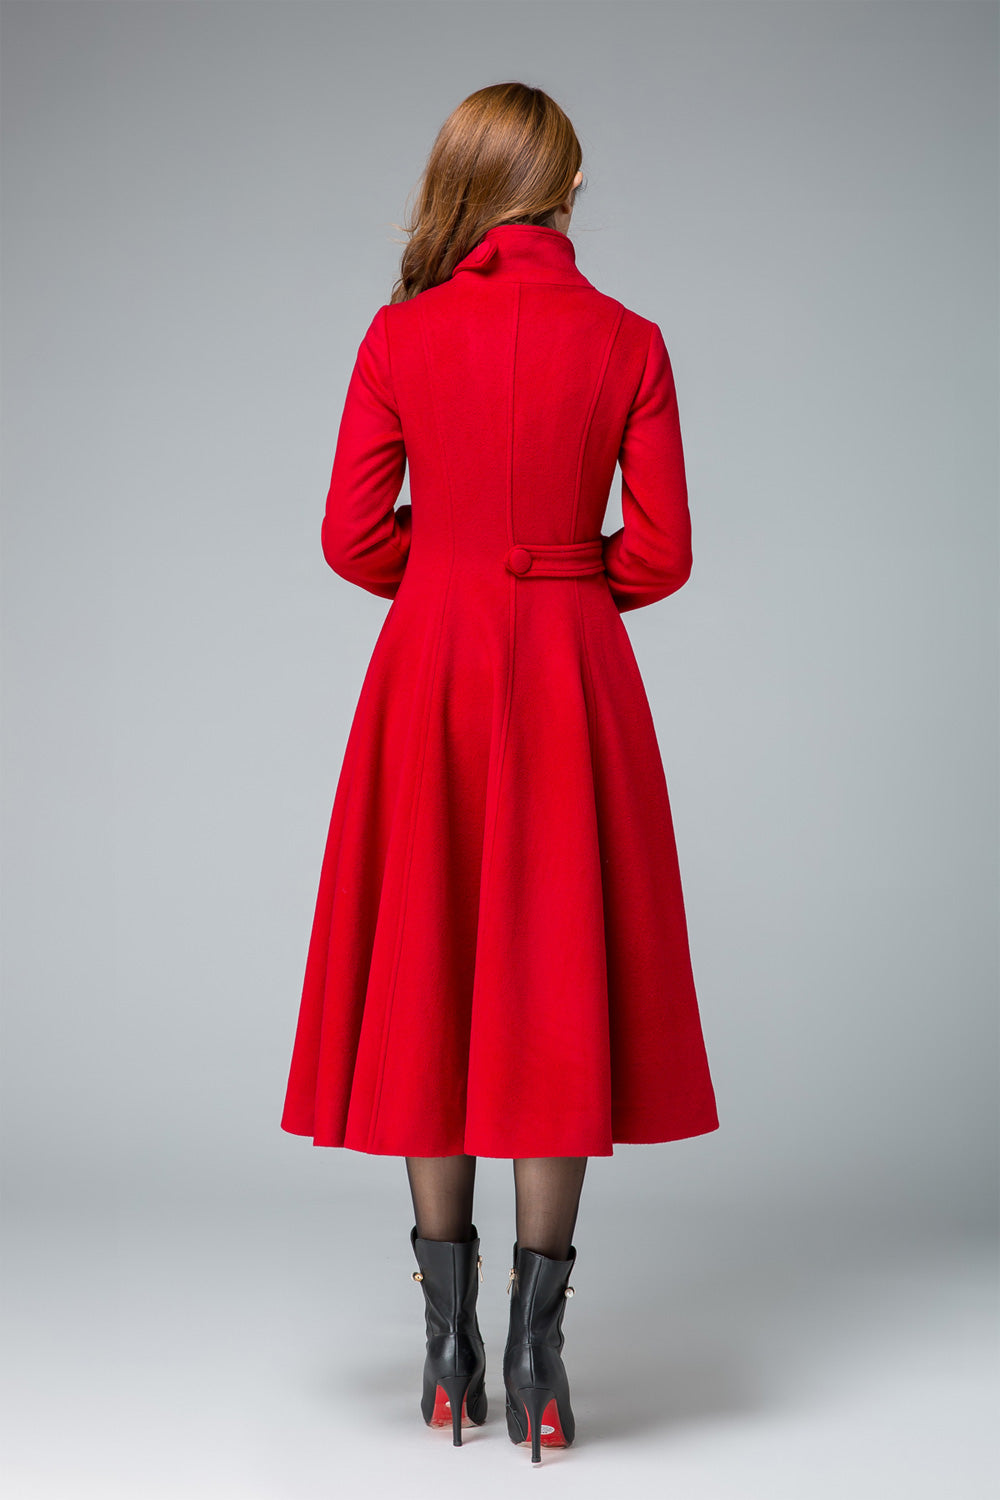 Frehsky winter coats for women Women Wool Double Coat Elegant Long Sleeve  Work Office Fashion Jacket womens tops Red